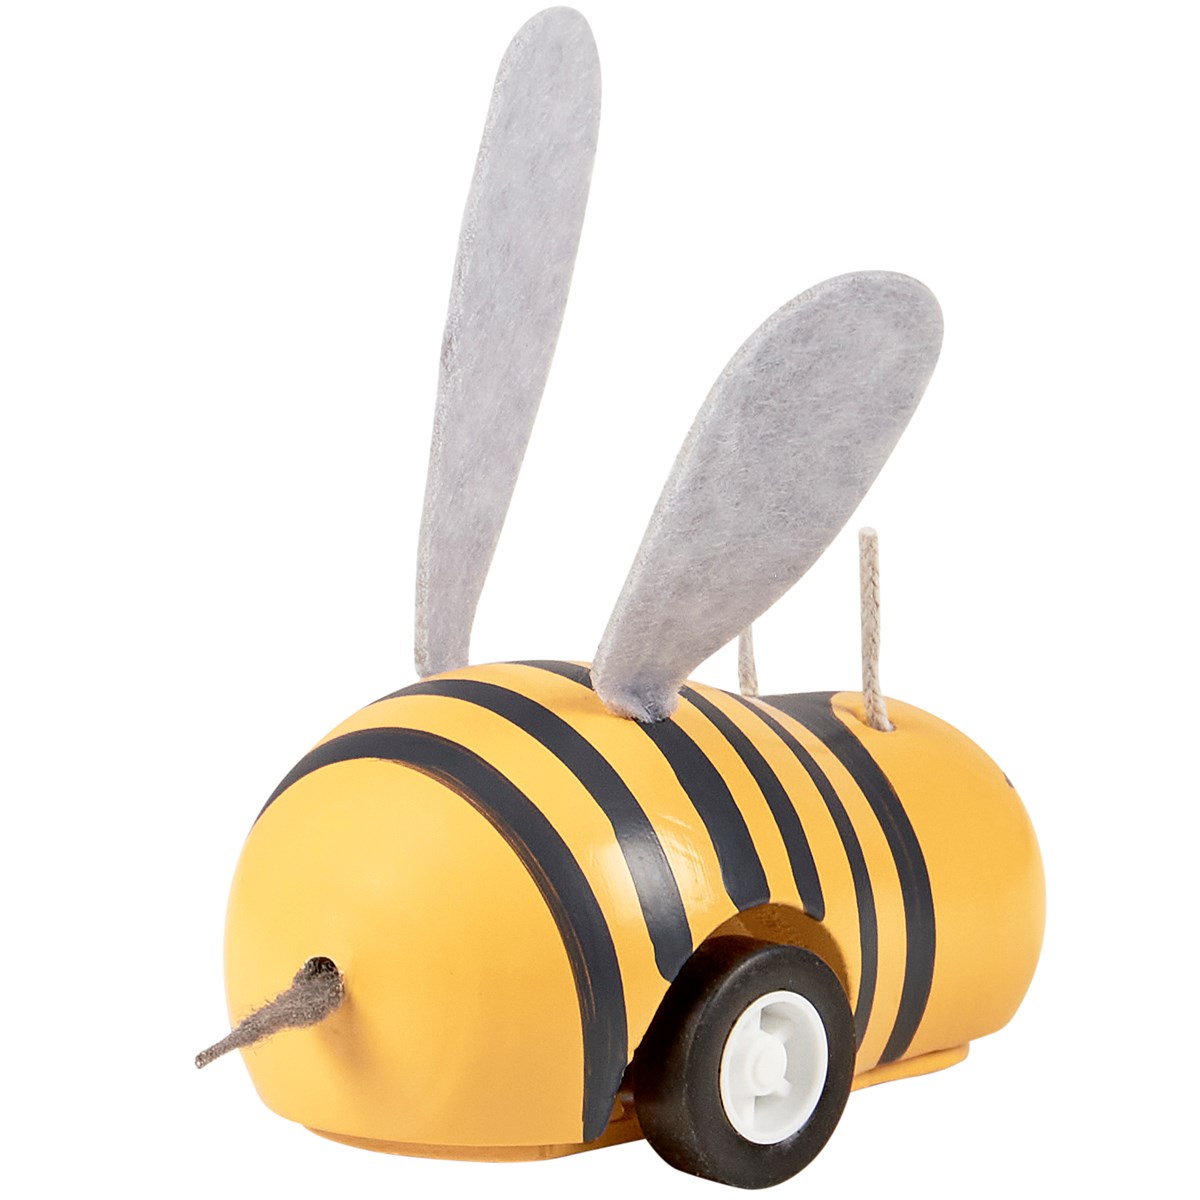 Bee Pull Back Toy - Wood, Plastic, Felt